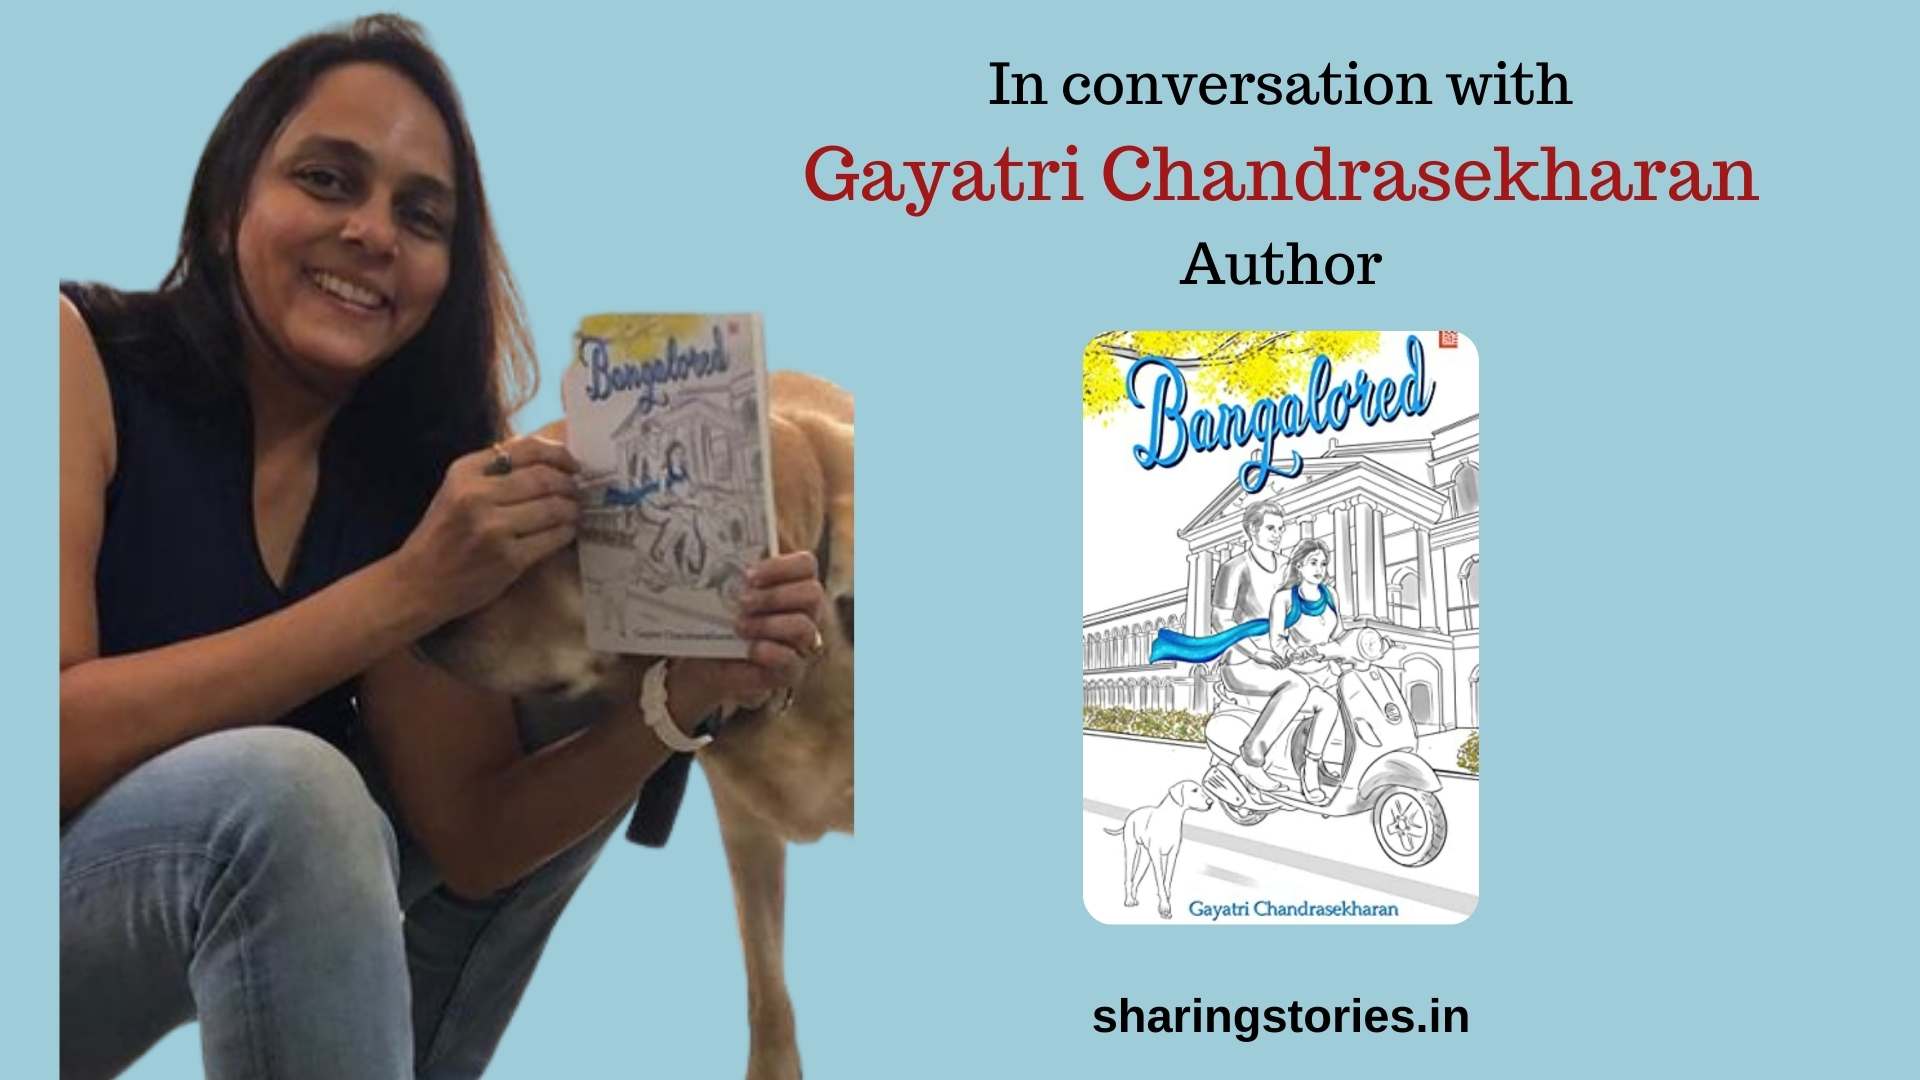 Author Gayatri Chandrasekharan